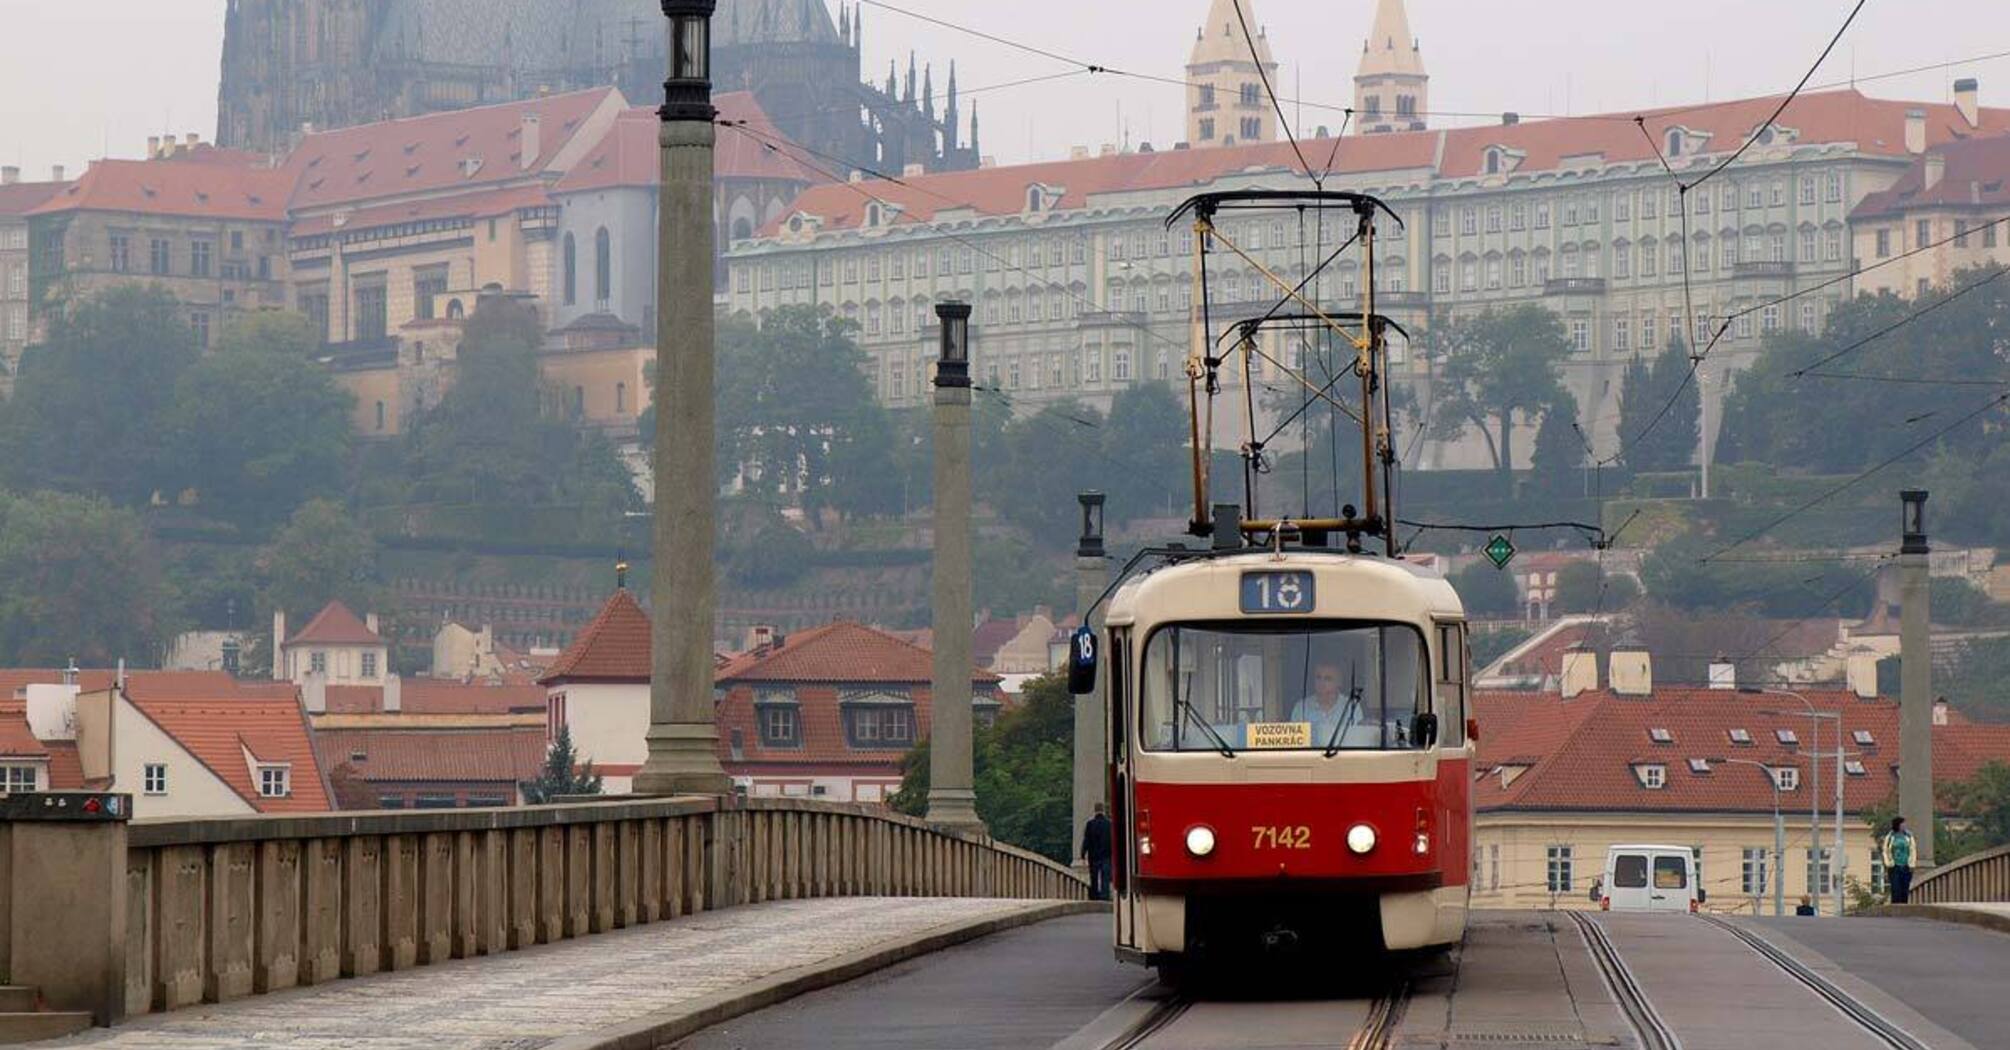 A tram in Prague